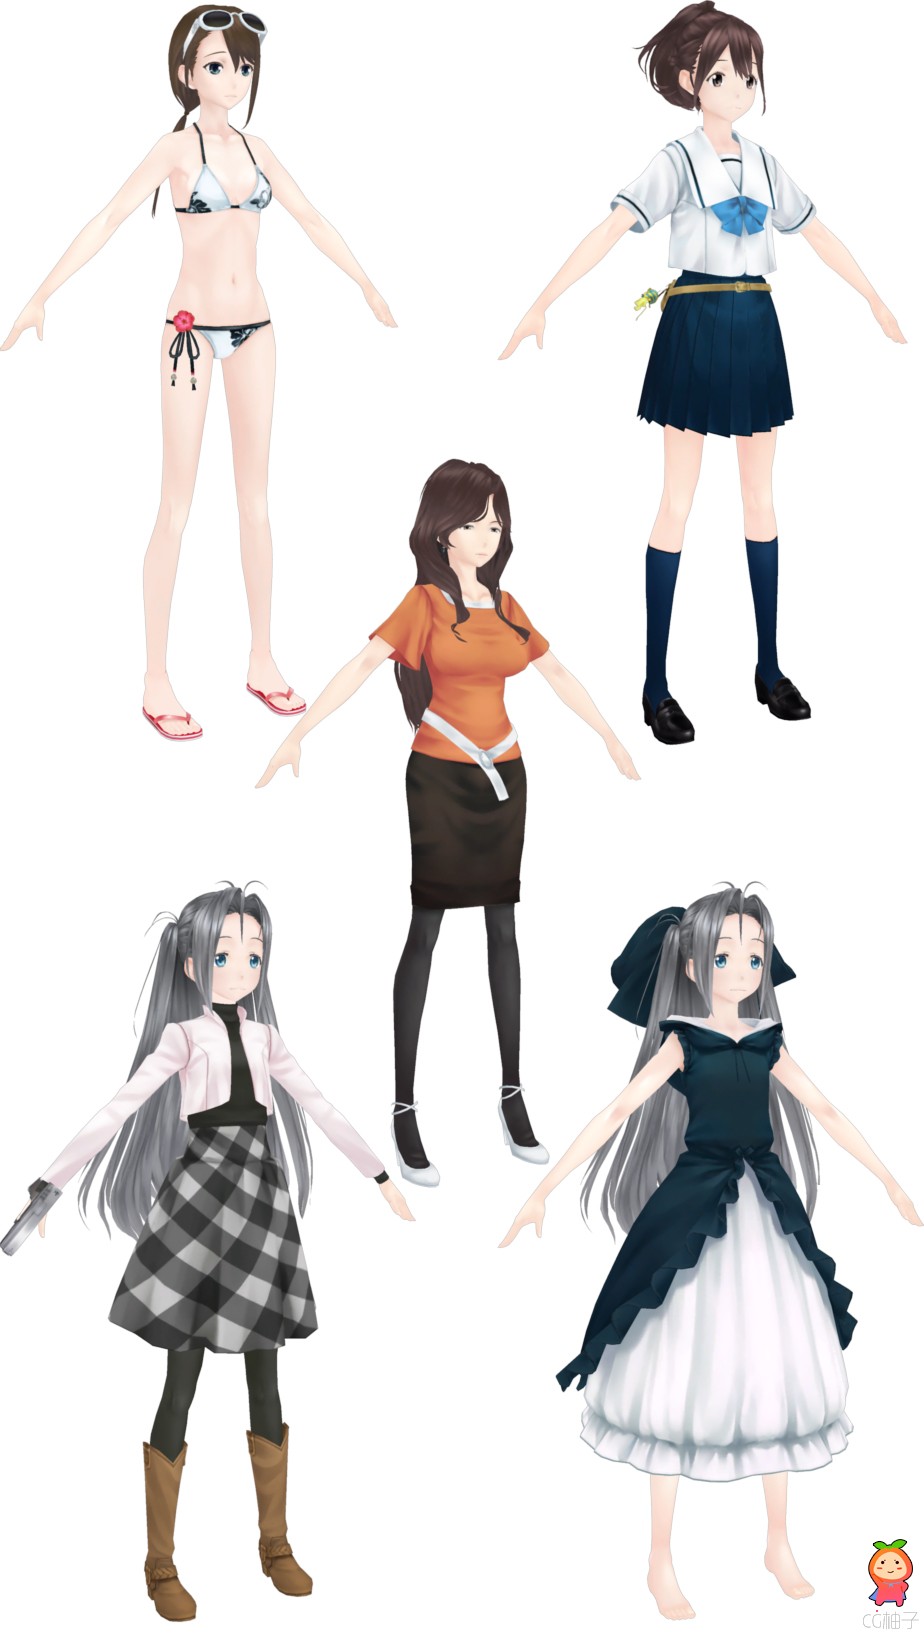 《机器人笔记》3D模型下载,女孩3D角色模型,3D美术资源下载